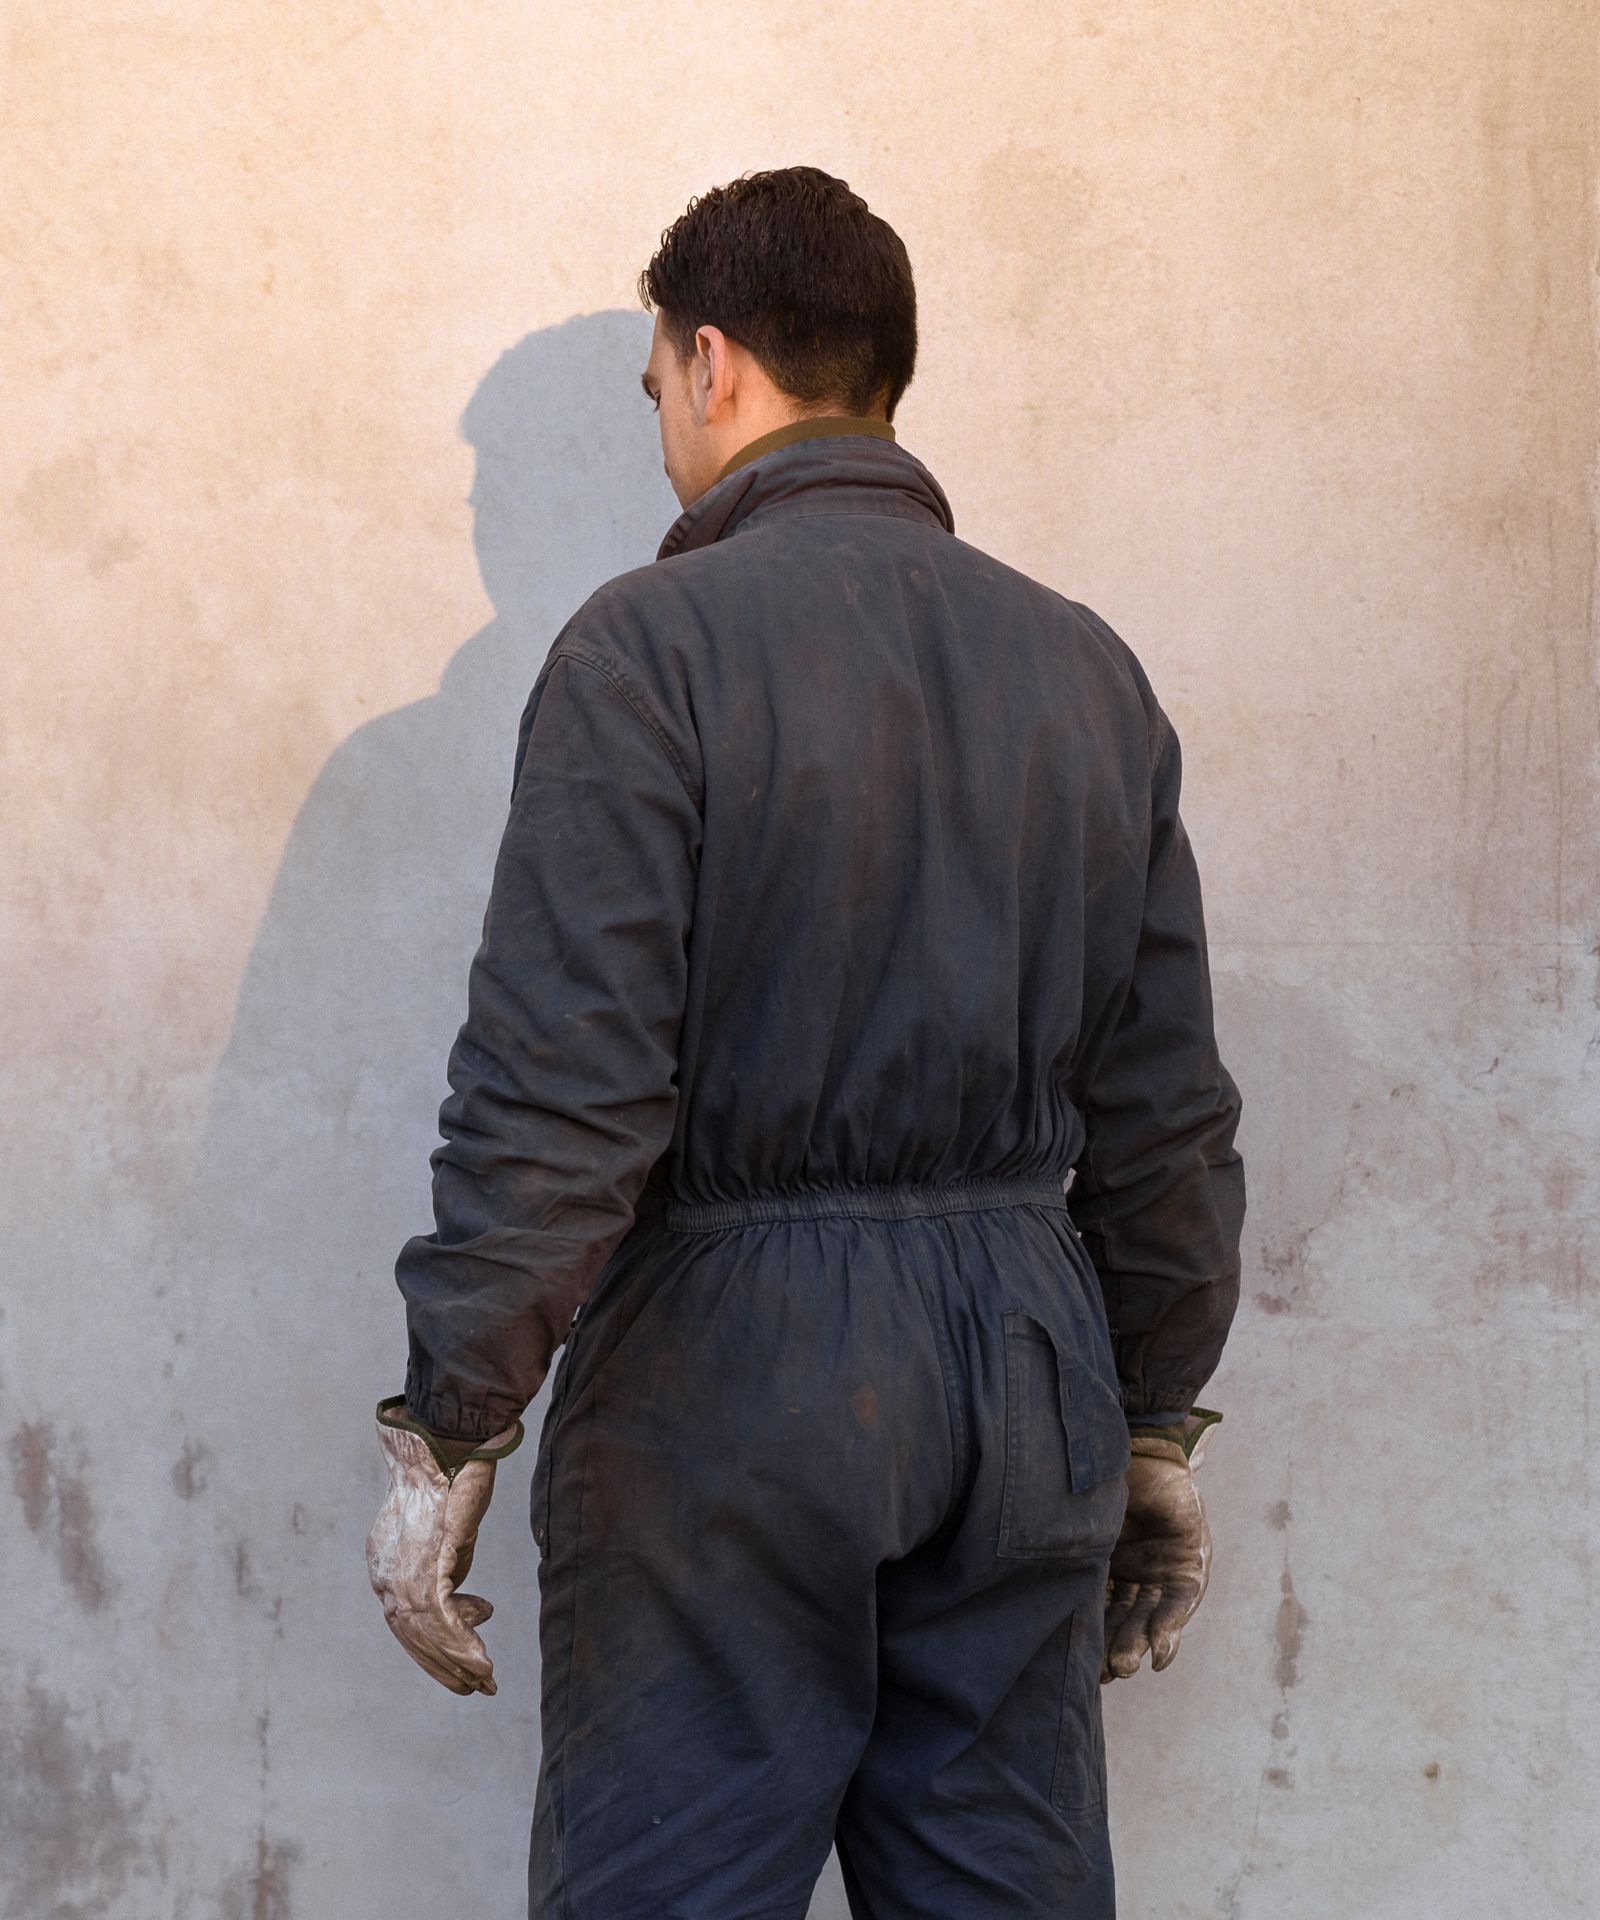 © Filippo Menichetti Martin Errichiello - Portrait of a worker in a factory behind the Gioia Tauro’s harbor.